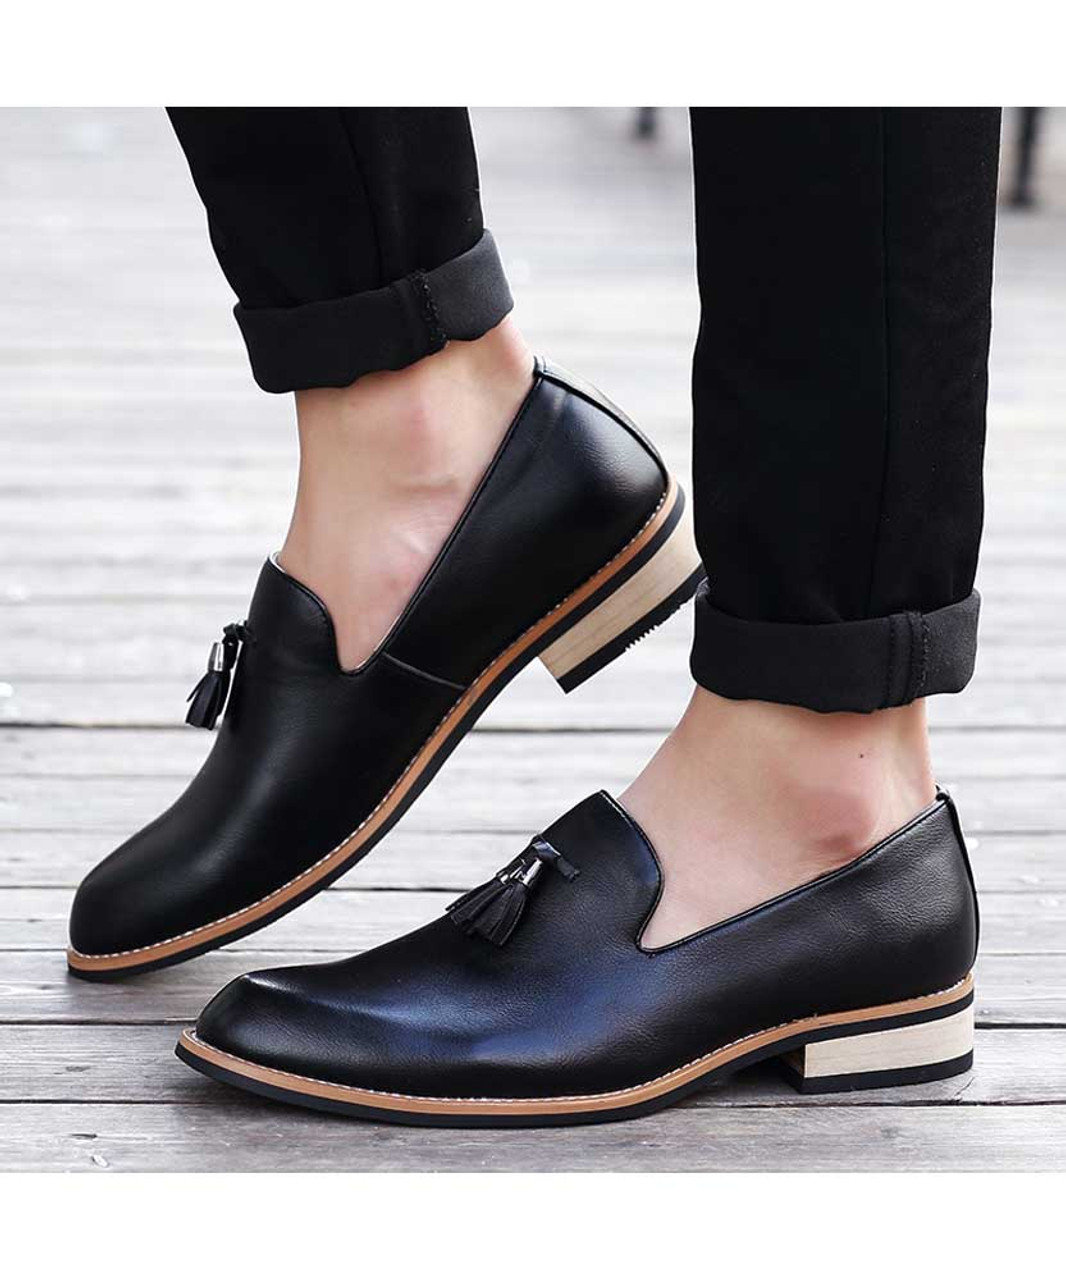 Black tassel on vamp leather slip on dress shoe | Mens dress shoes ...